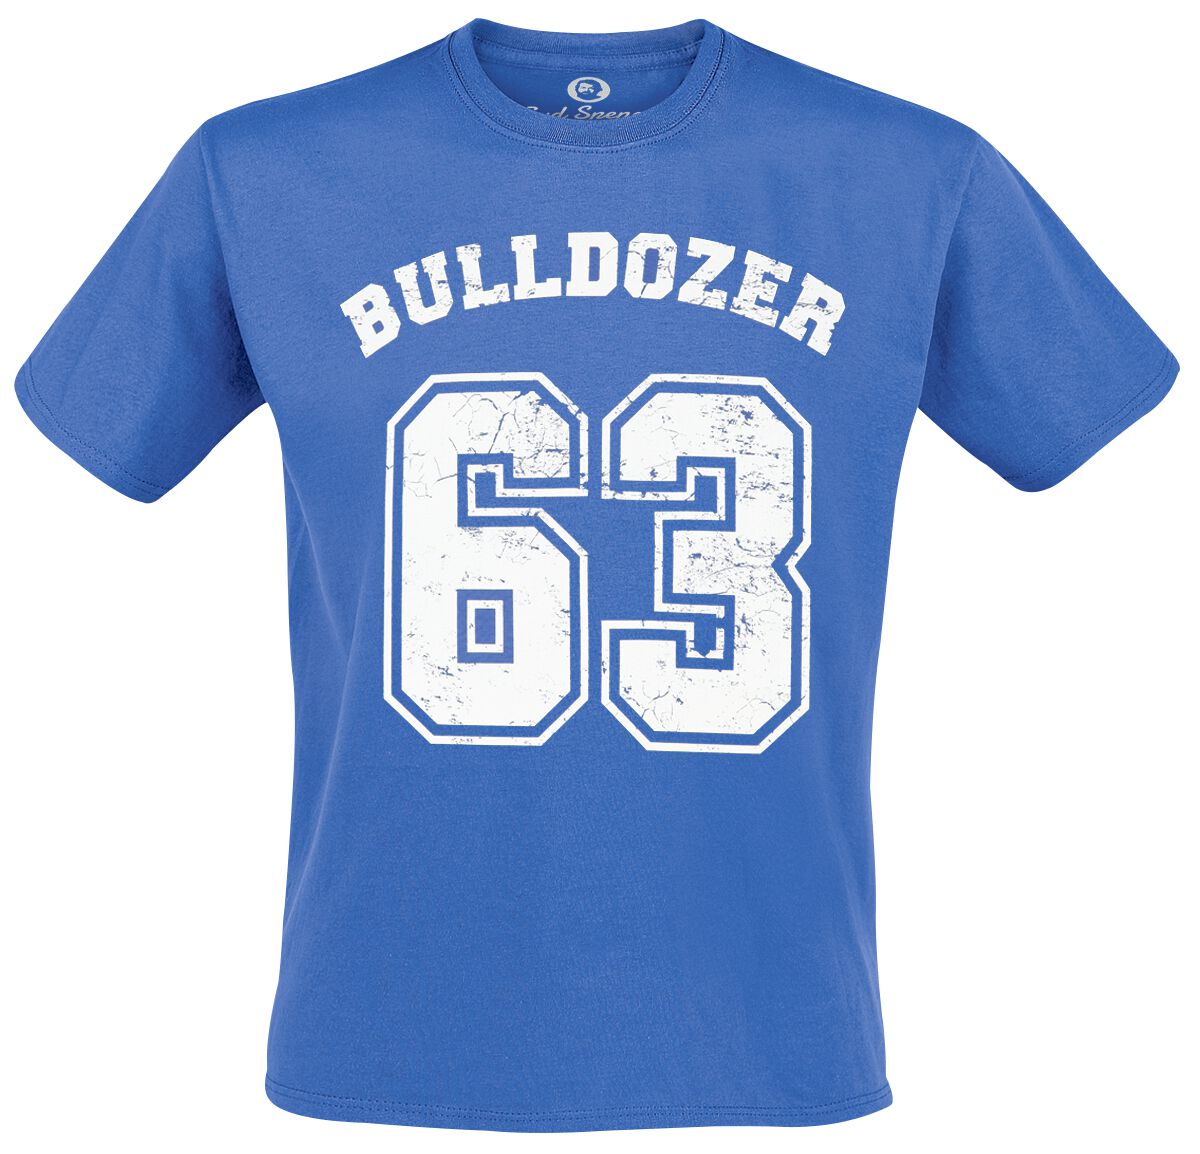 Bud Spencer T-Shirt - Bulldozer - M bis 5XL - für Männer - Größe 4XL - blau  - Lizenzierter Fanartikel